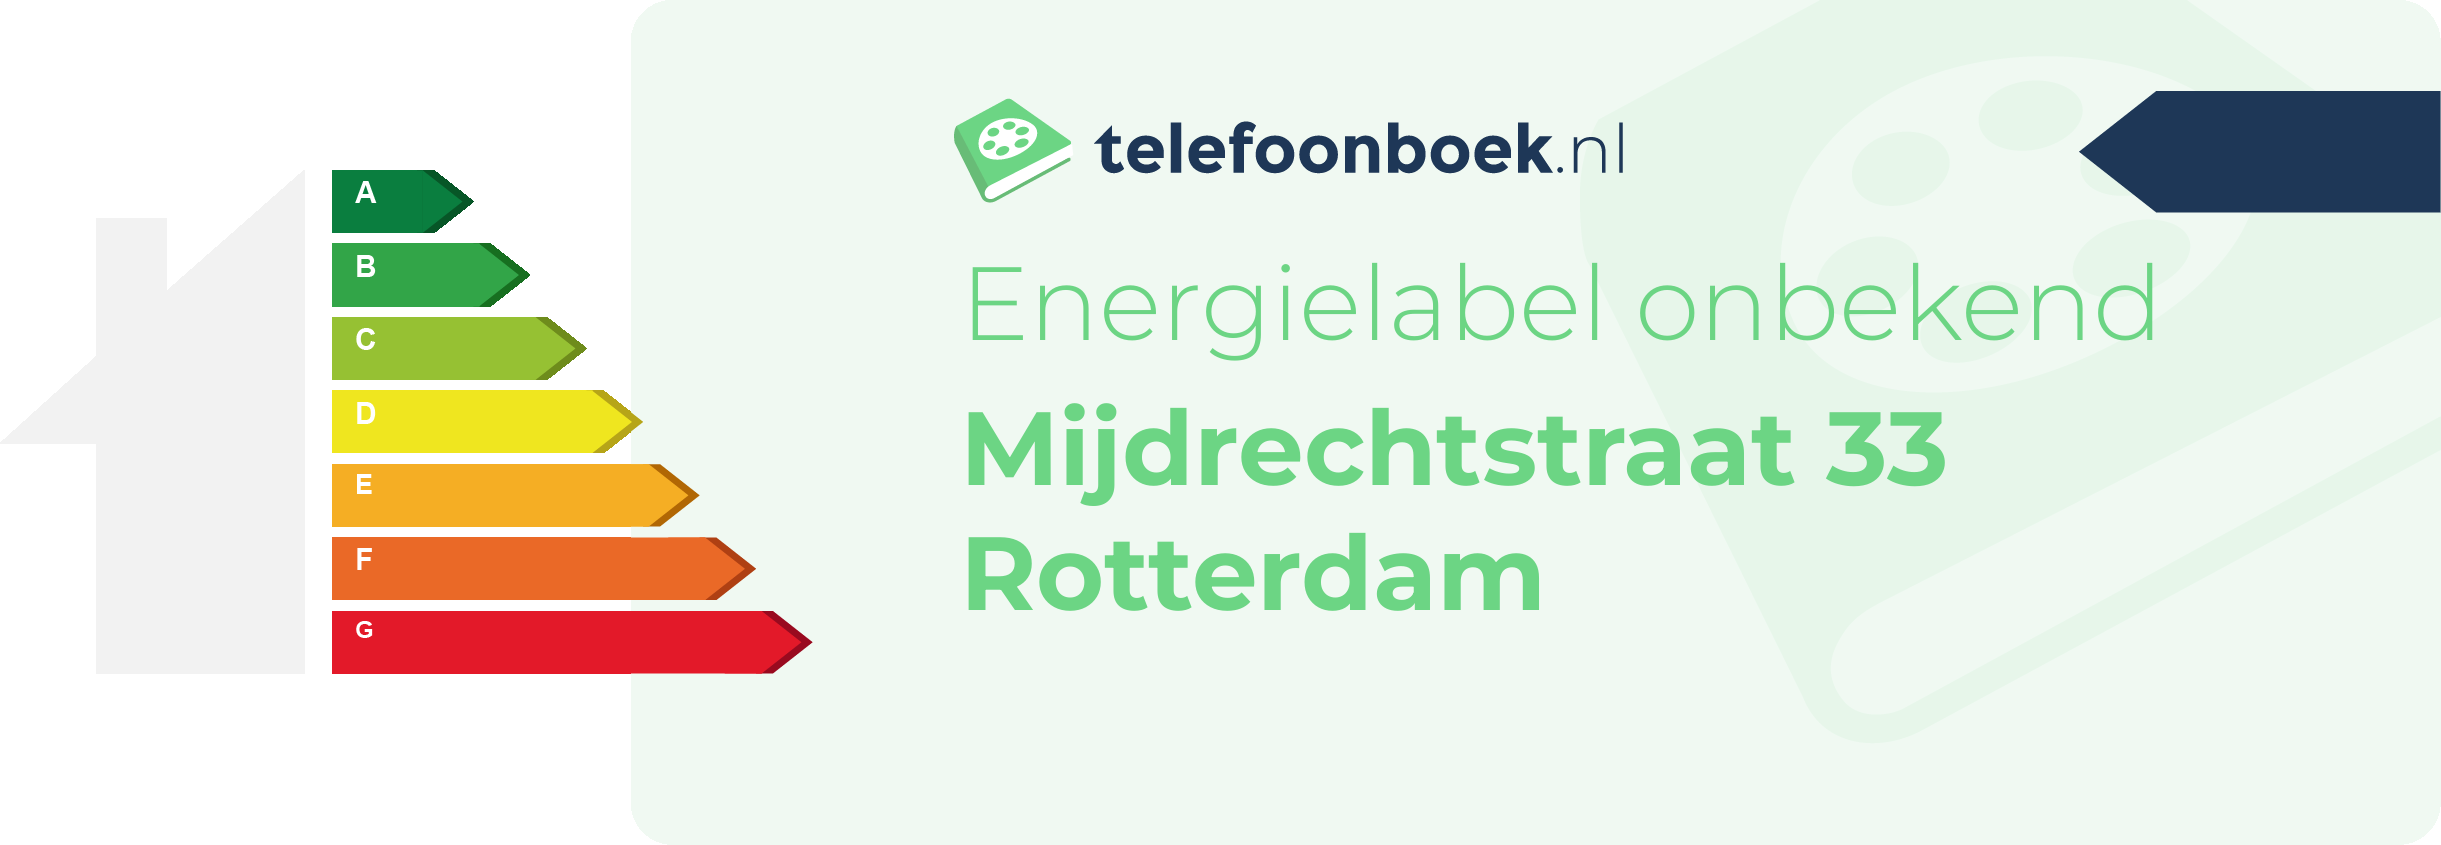 Energielabel Mijdrechtstraat 33 Rotterdam